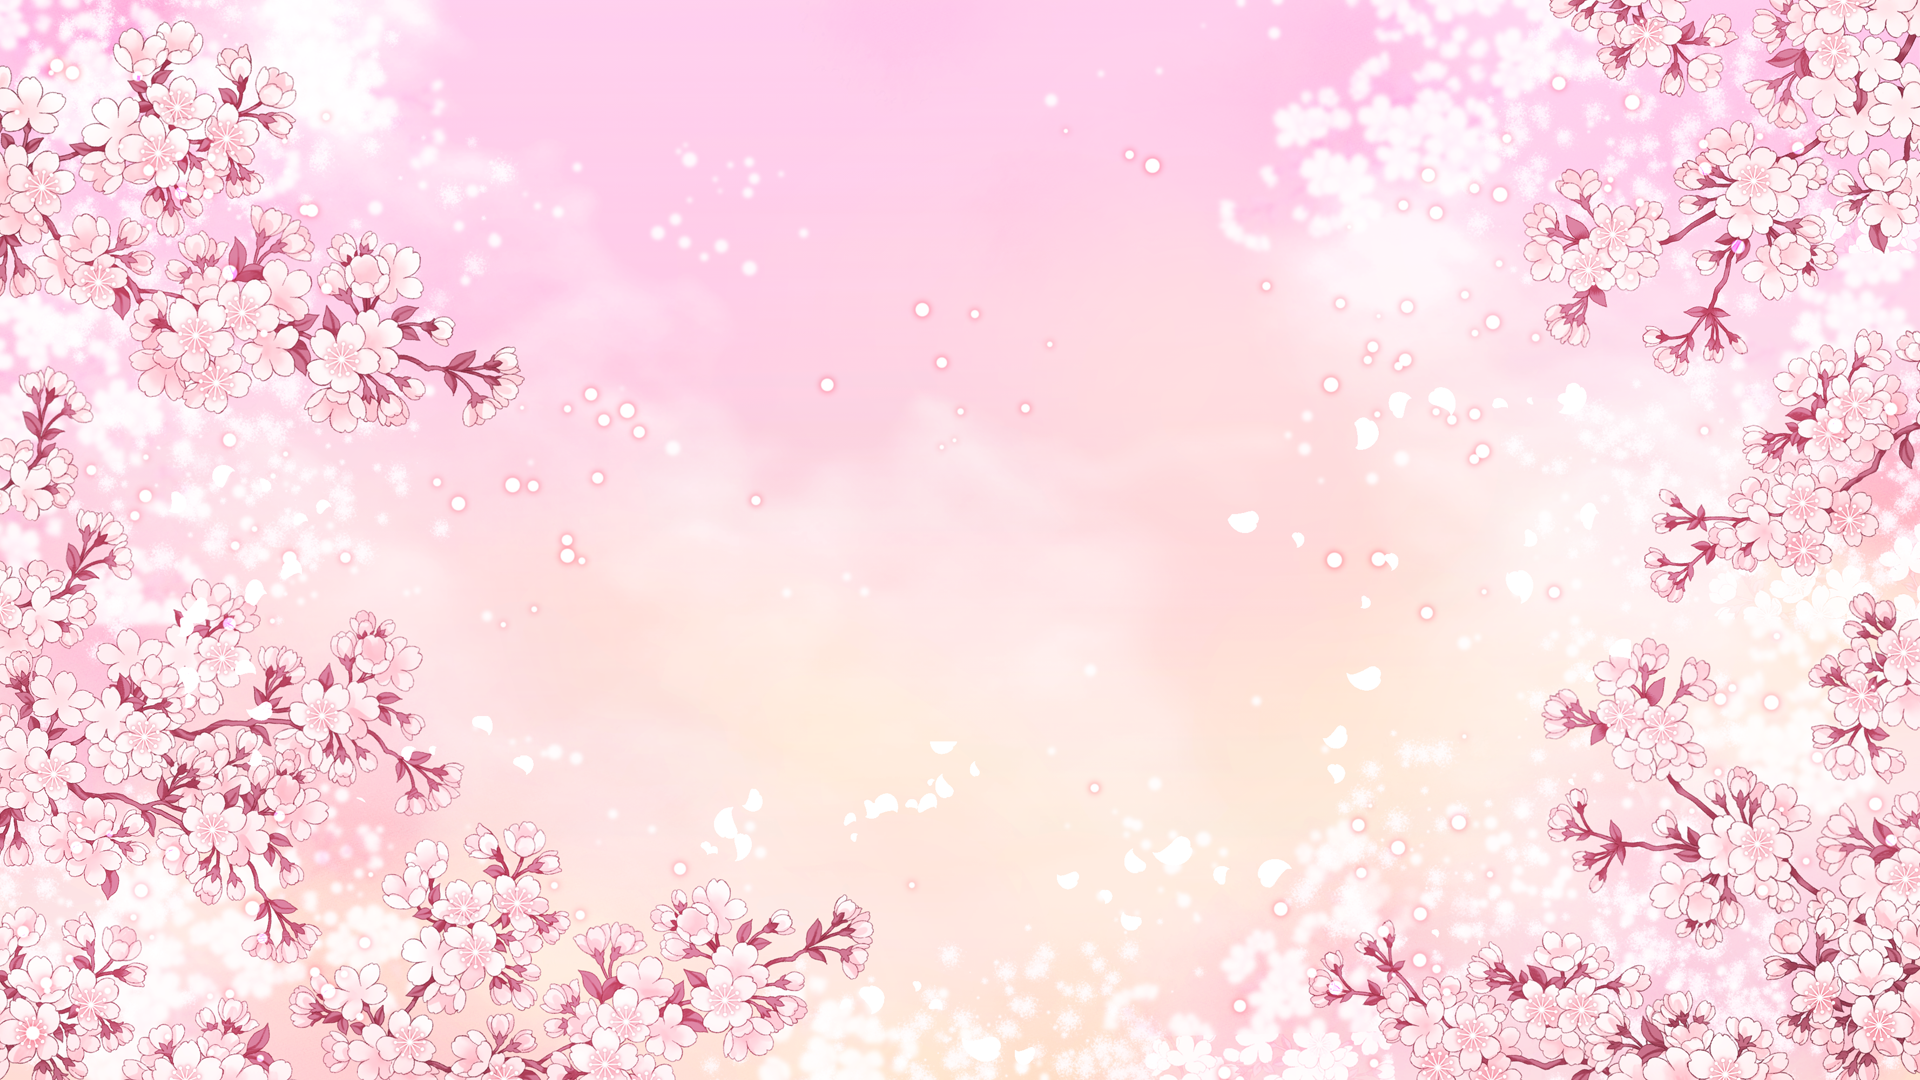 Tràn ngập màu hồng yêu kiều trên bầu trời kỳ ảo, Anime Pink Sky chắc chắn sẽ cho bạn cảm giác như đang sống trong một bức tranh siêu thực. Khám phá ngay hình ảnh này để khám phá thêm những điều mới lạ!